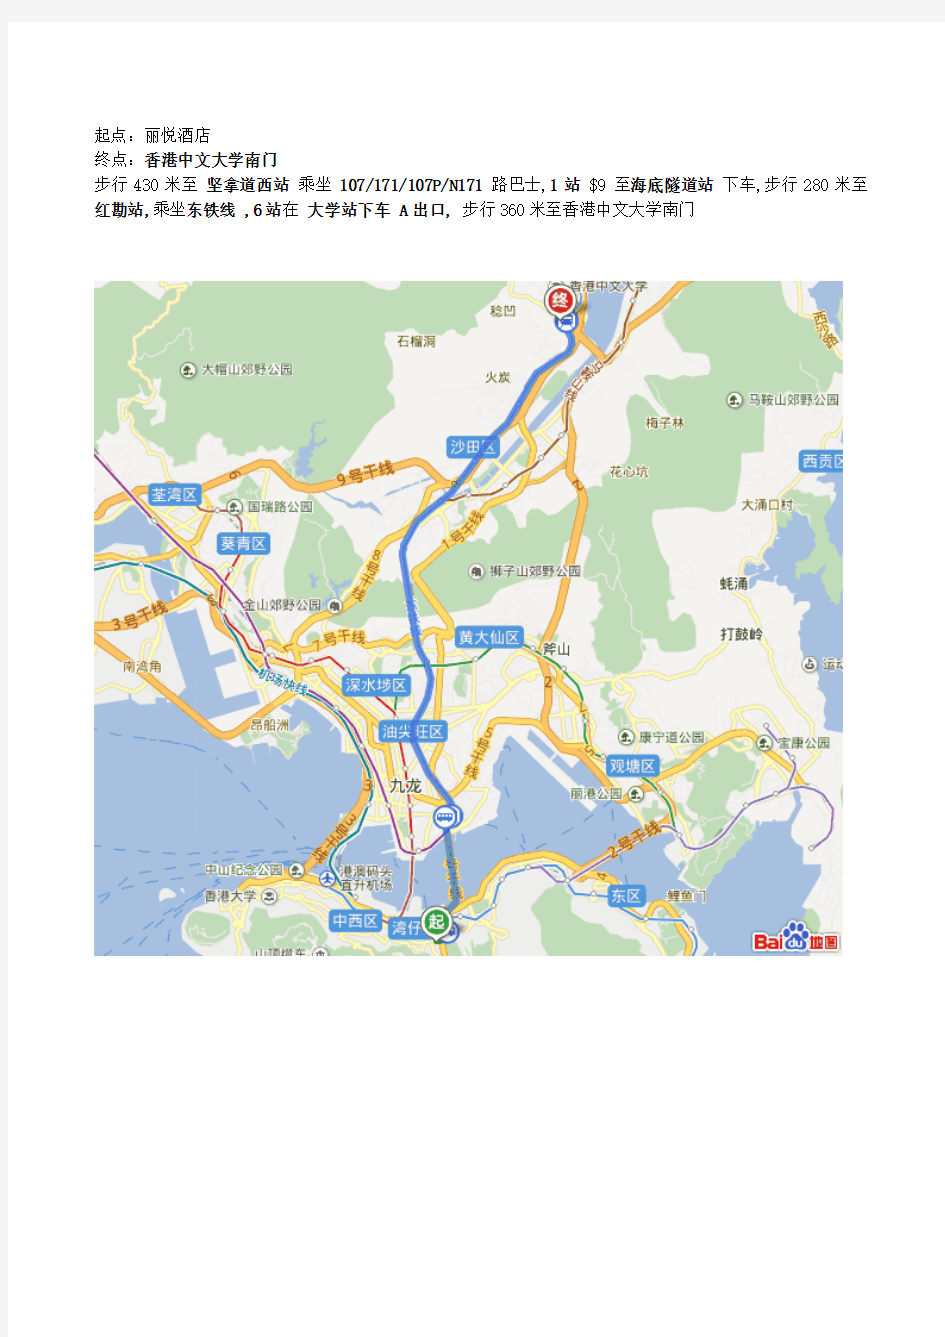 香港各大学路线图